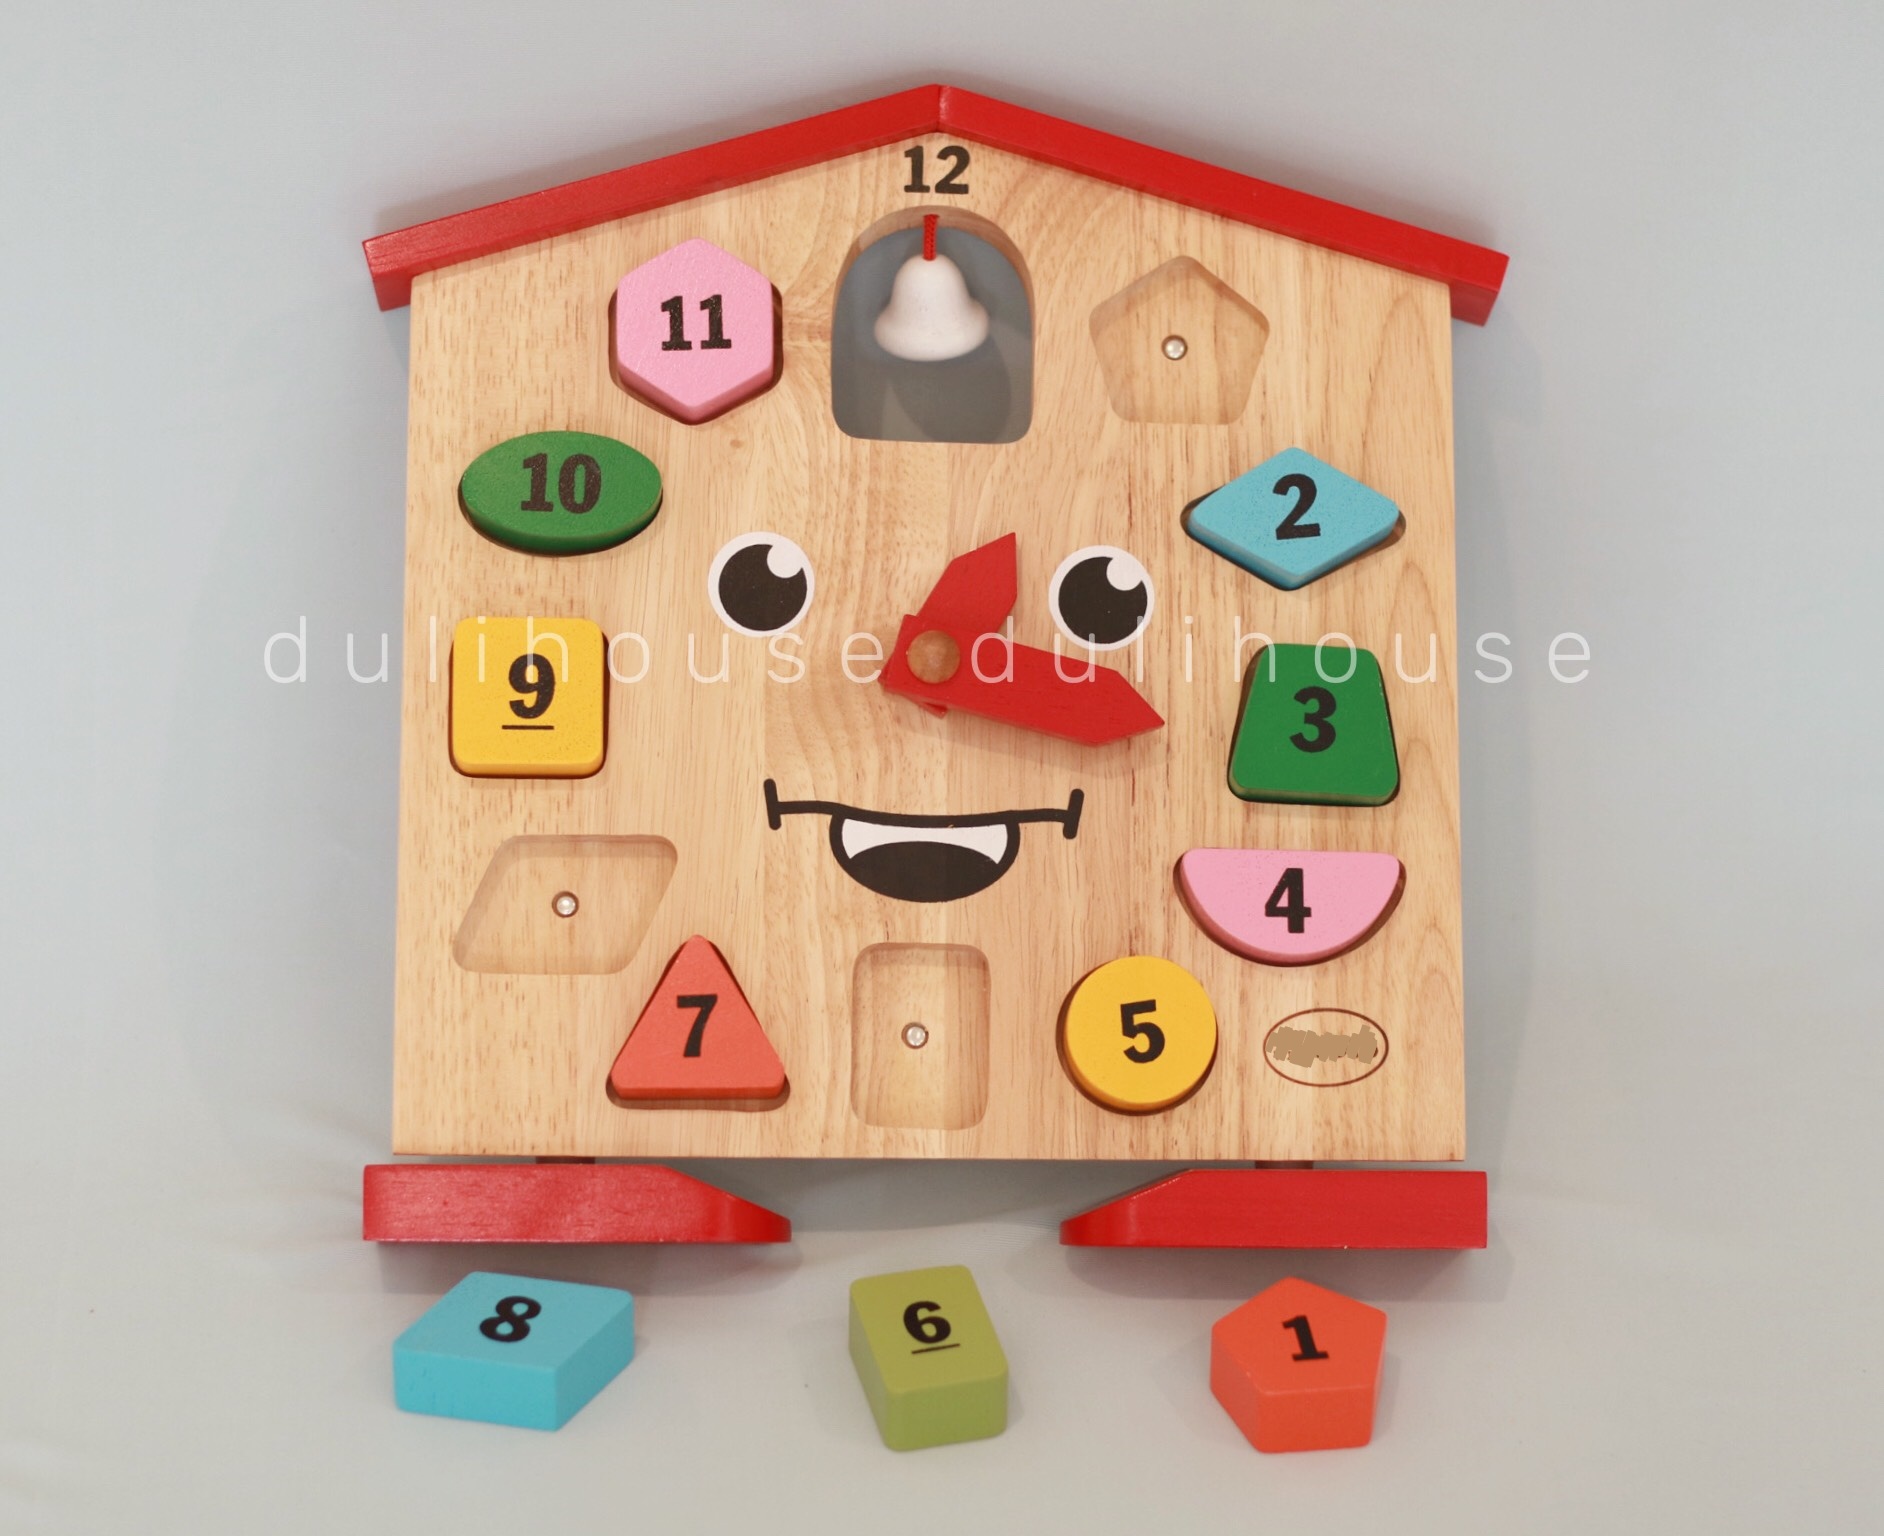 Đồng hồ mặt cười ngôi nhà thân thiện - Vừa giúp bé học đếm, vừa ghi nhớ hình khối và màu sắc cơ bản - Sản phẩm hỗ trợ quá trình tiếp cận cuộc sống cho Bé từ sớm - Gỗ tự nhiên an toàn